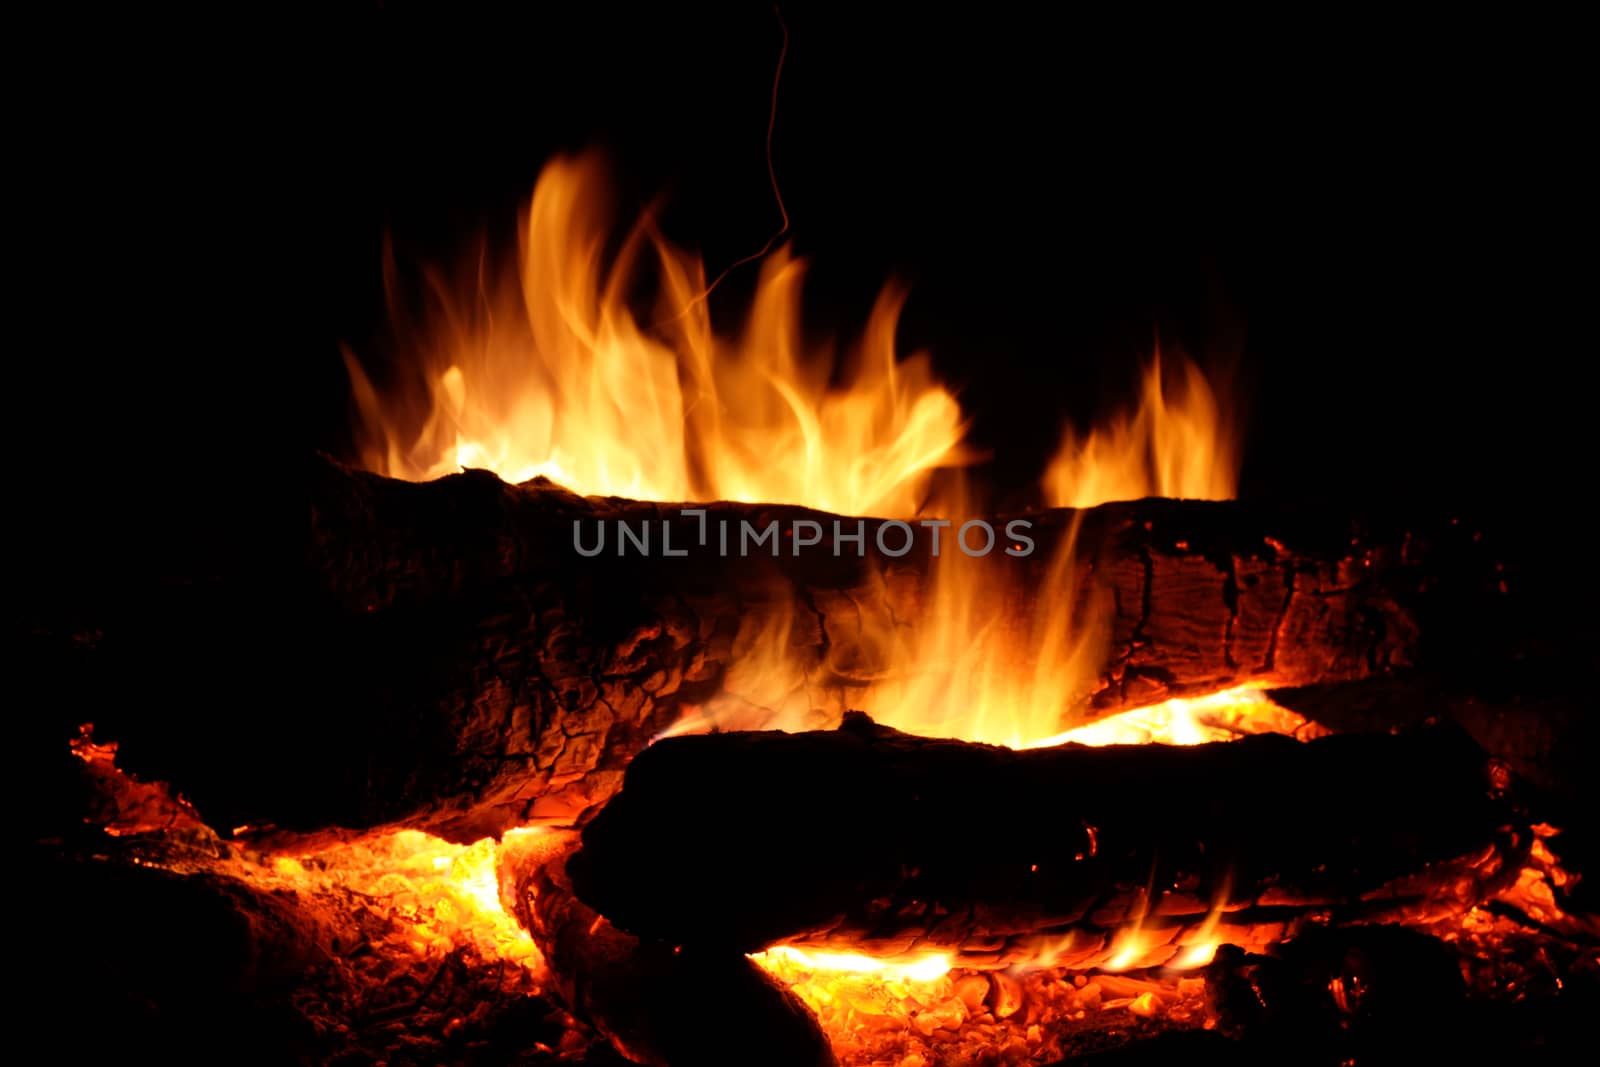 campfire flames at night